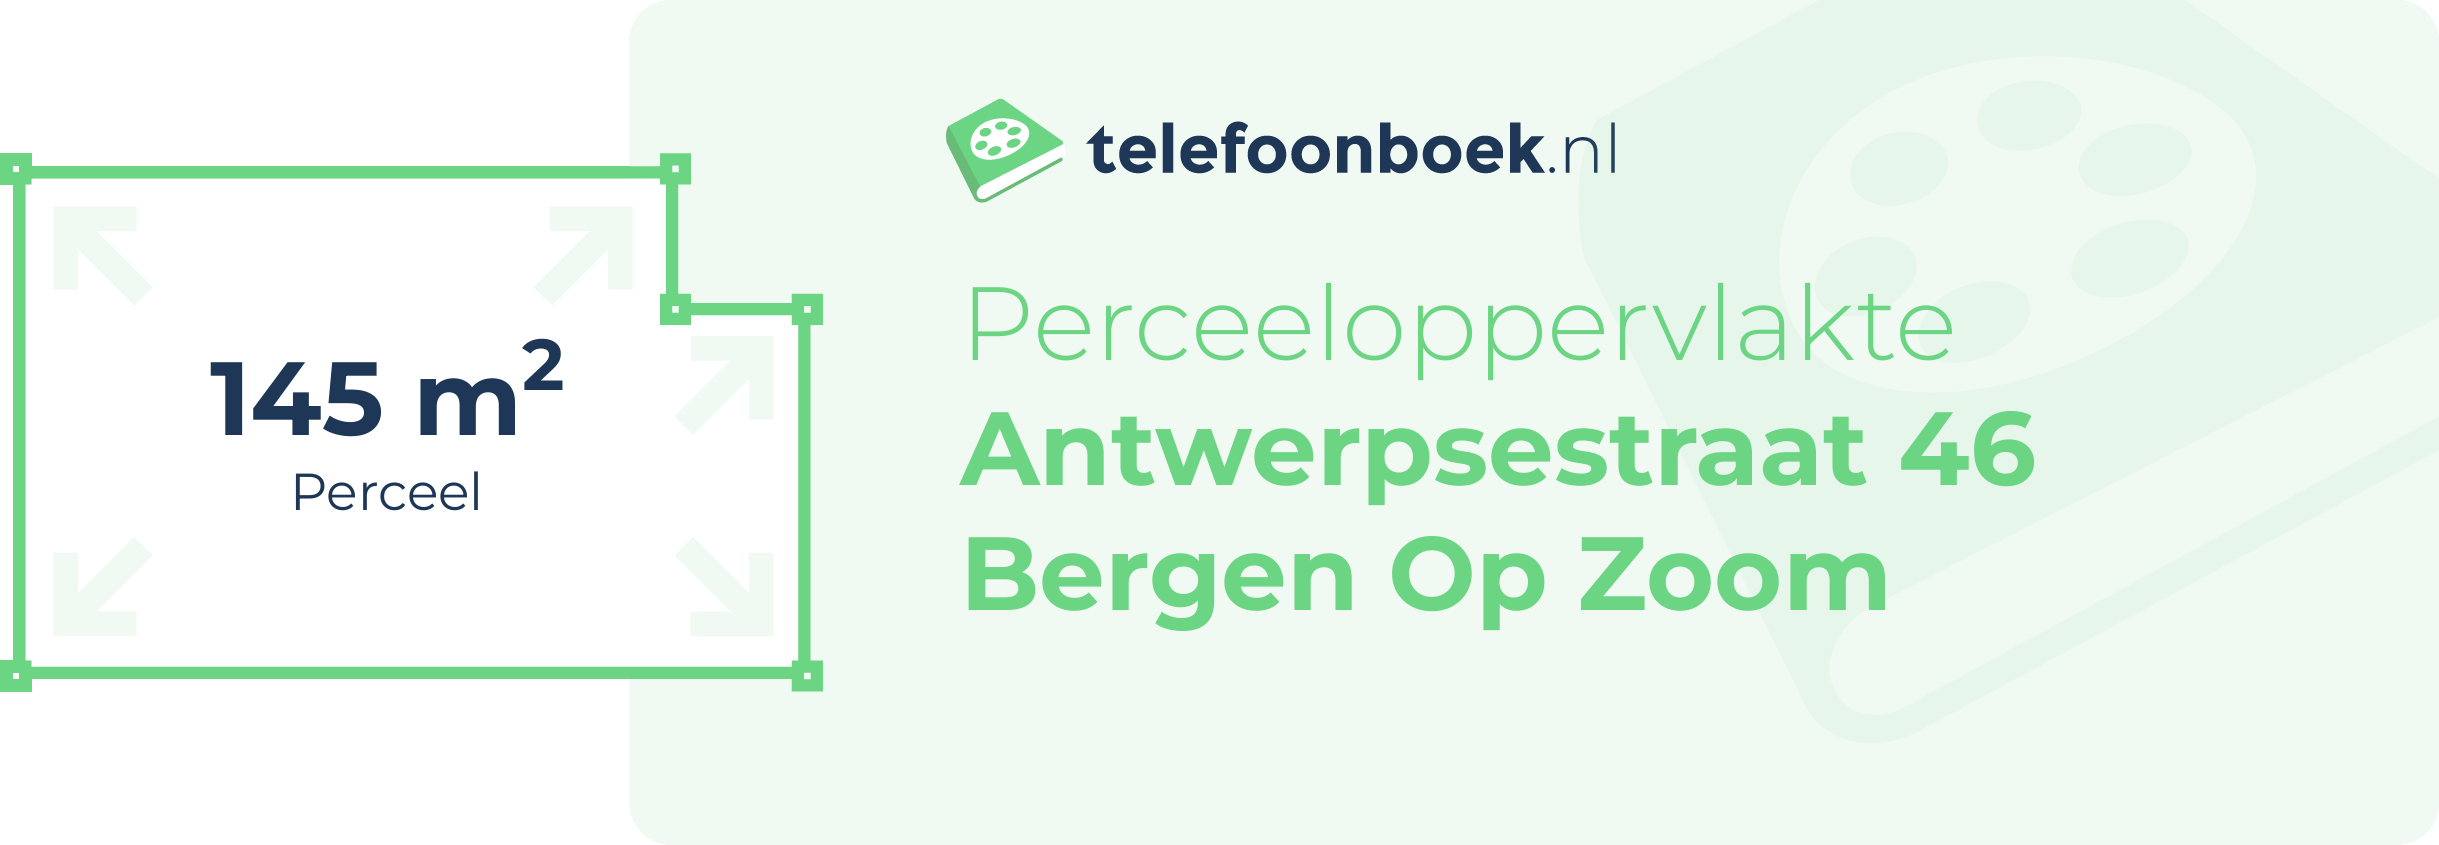 Perceeloppervlakte Antwerpsestraat 46 Bergen Op Zoom